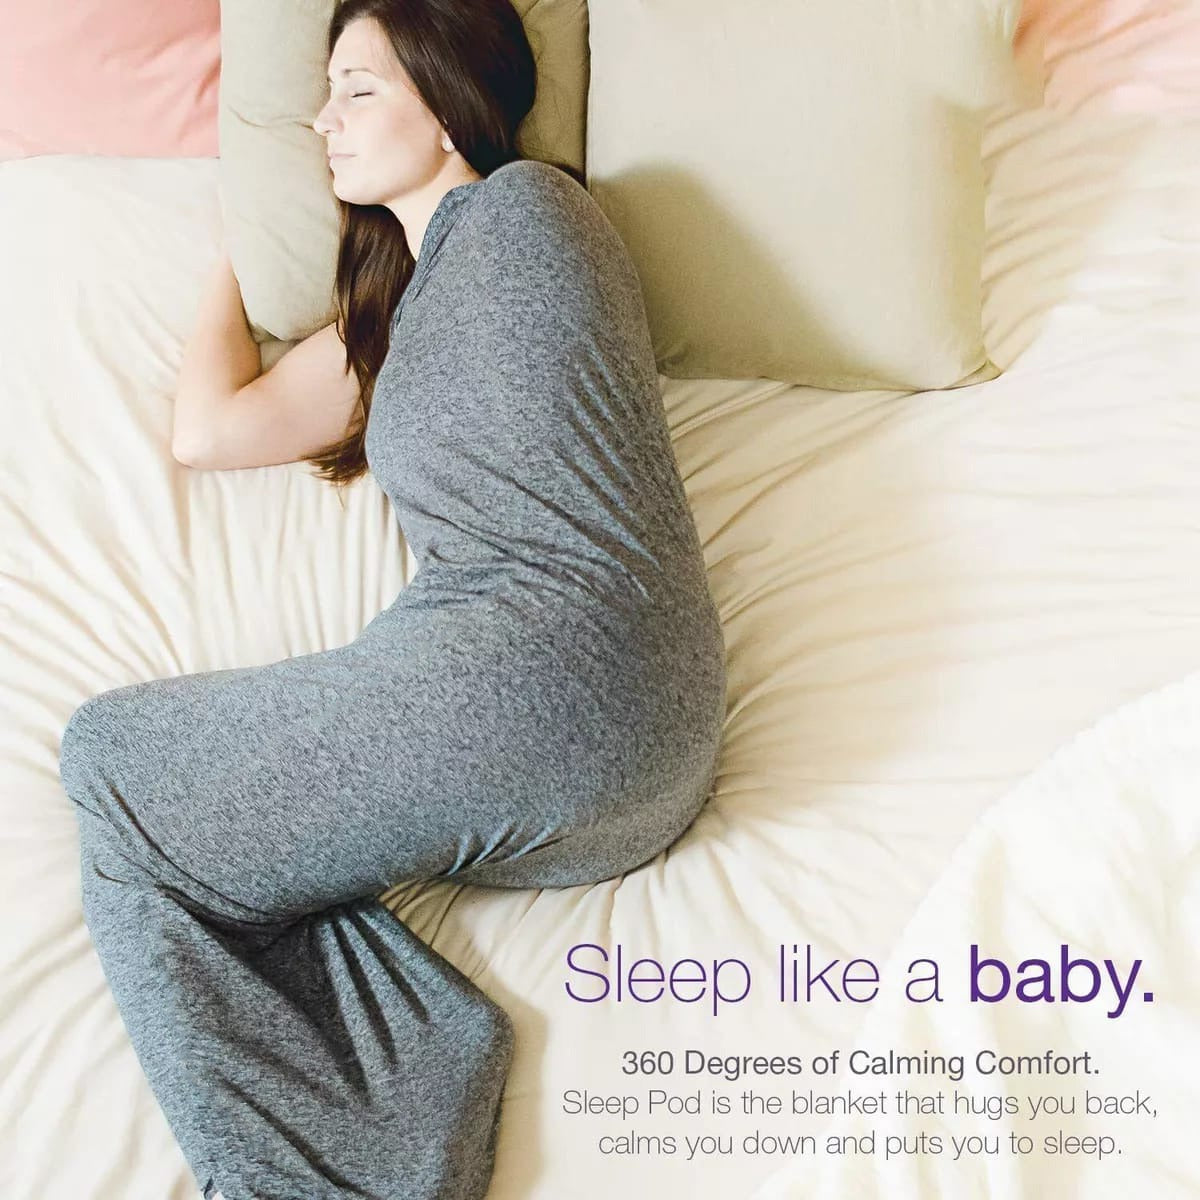 A Women Sleeping in a Wearable Sleep Pod.